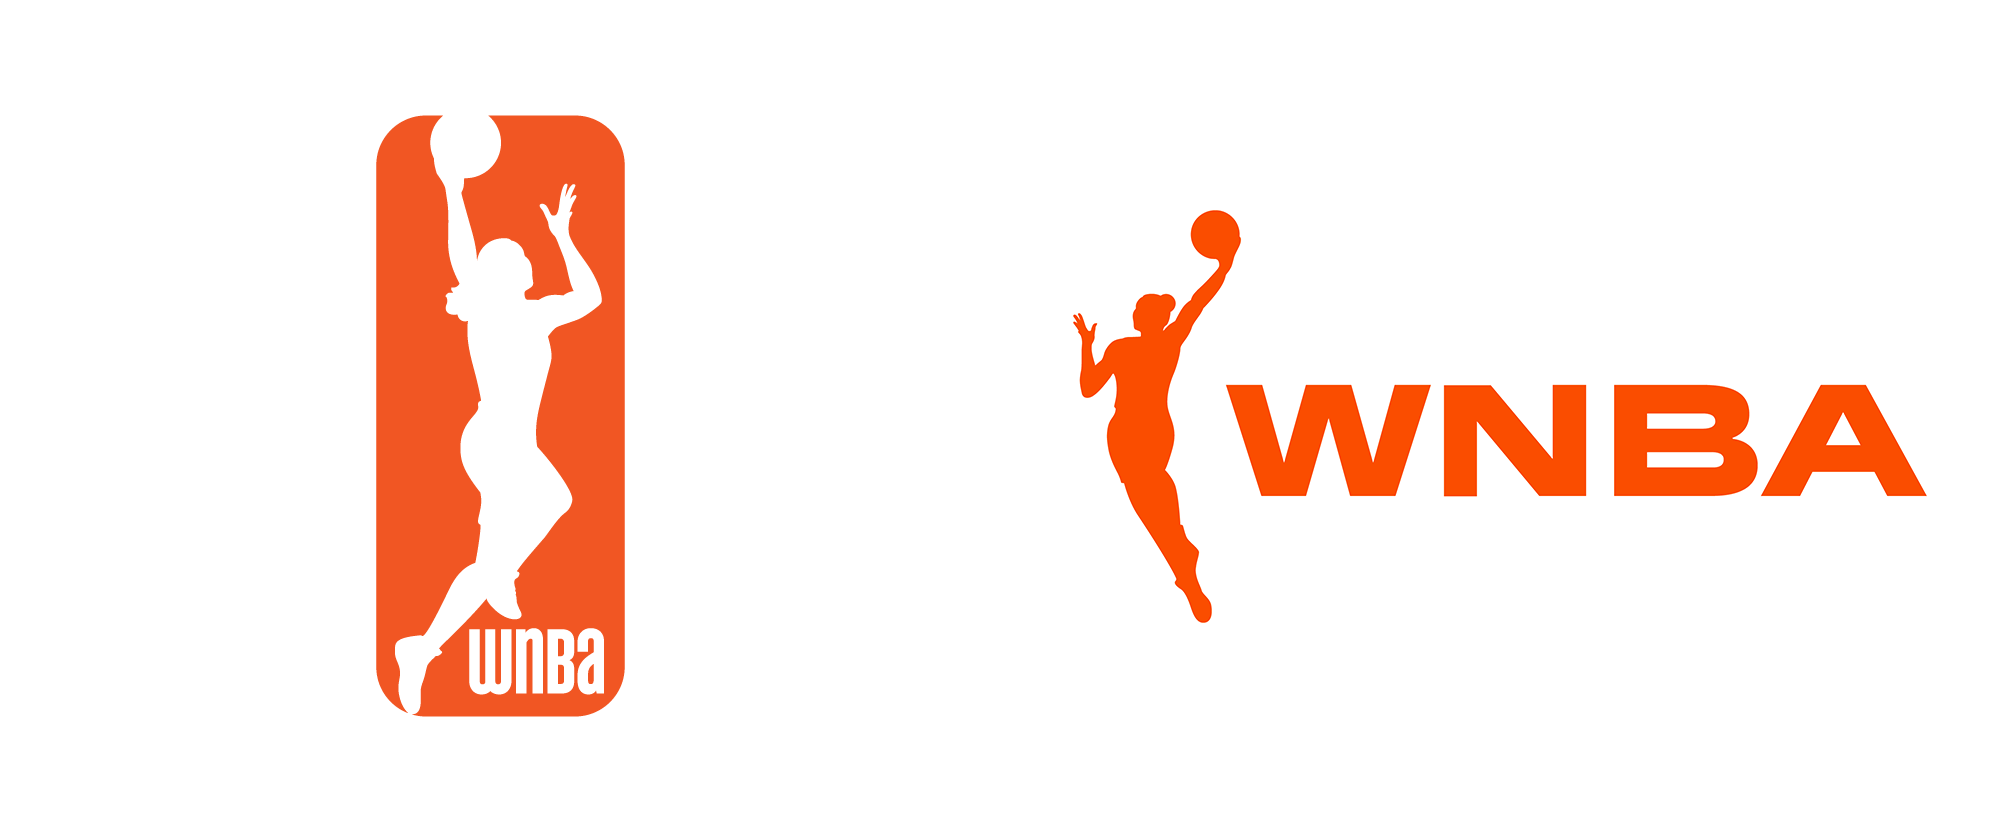 WNBA女子职业团体体育联盟logo设计